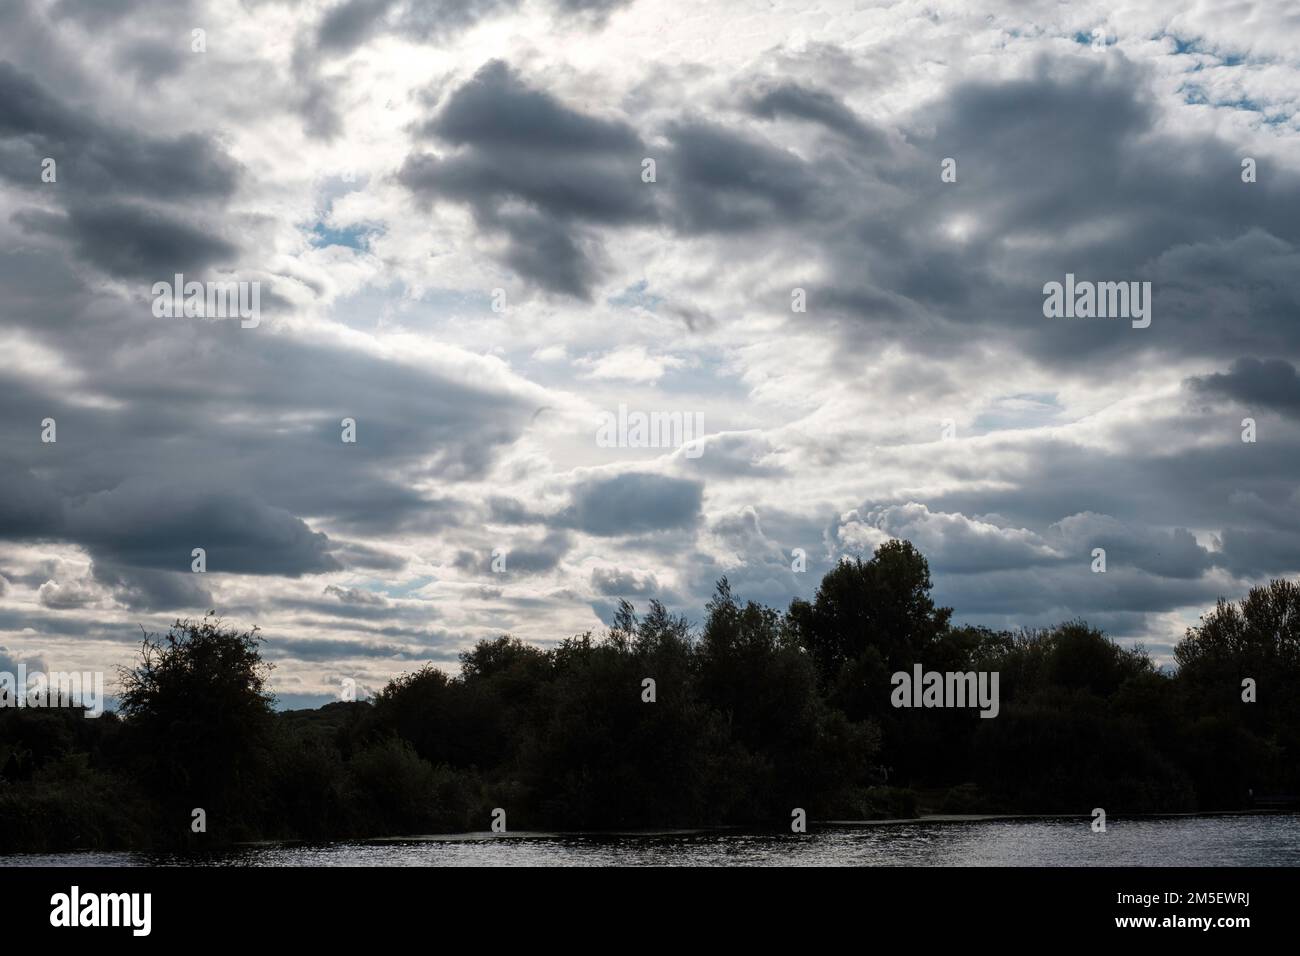 River Thames, Oxfordshire, United Kingdom Stock Photo